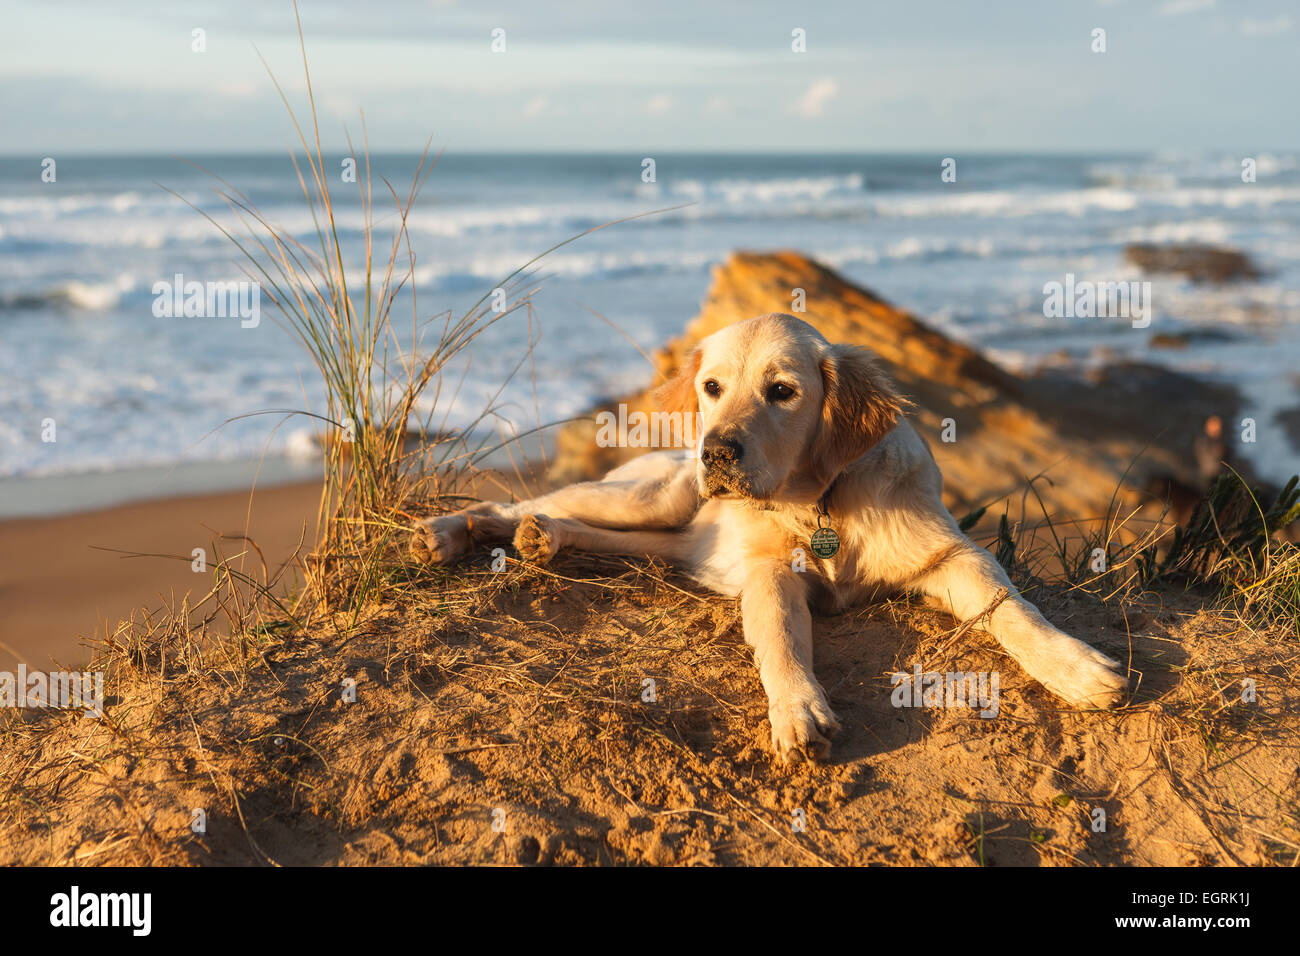 A golden retriever puppy relaxing near the beach Stock Photo